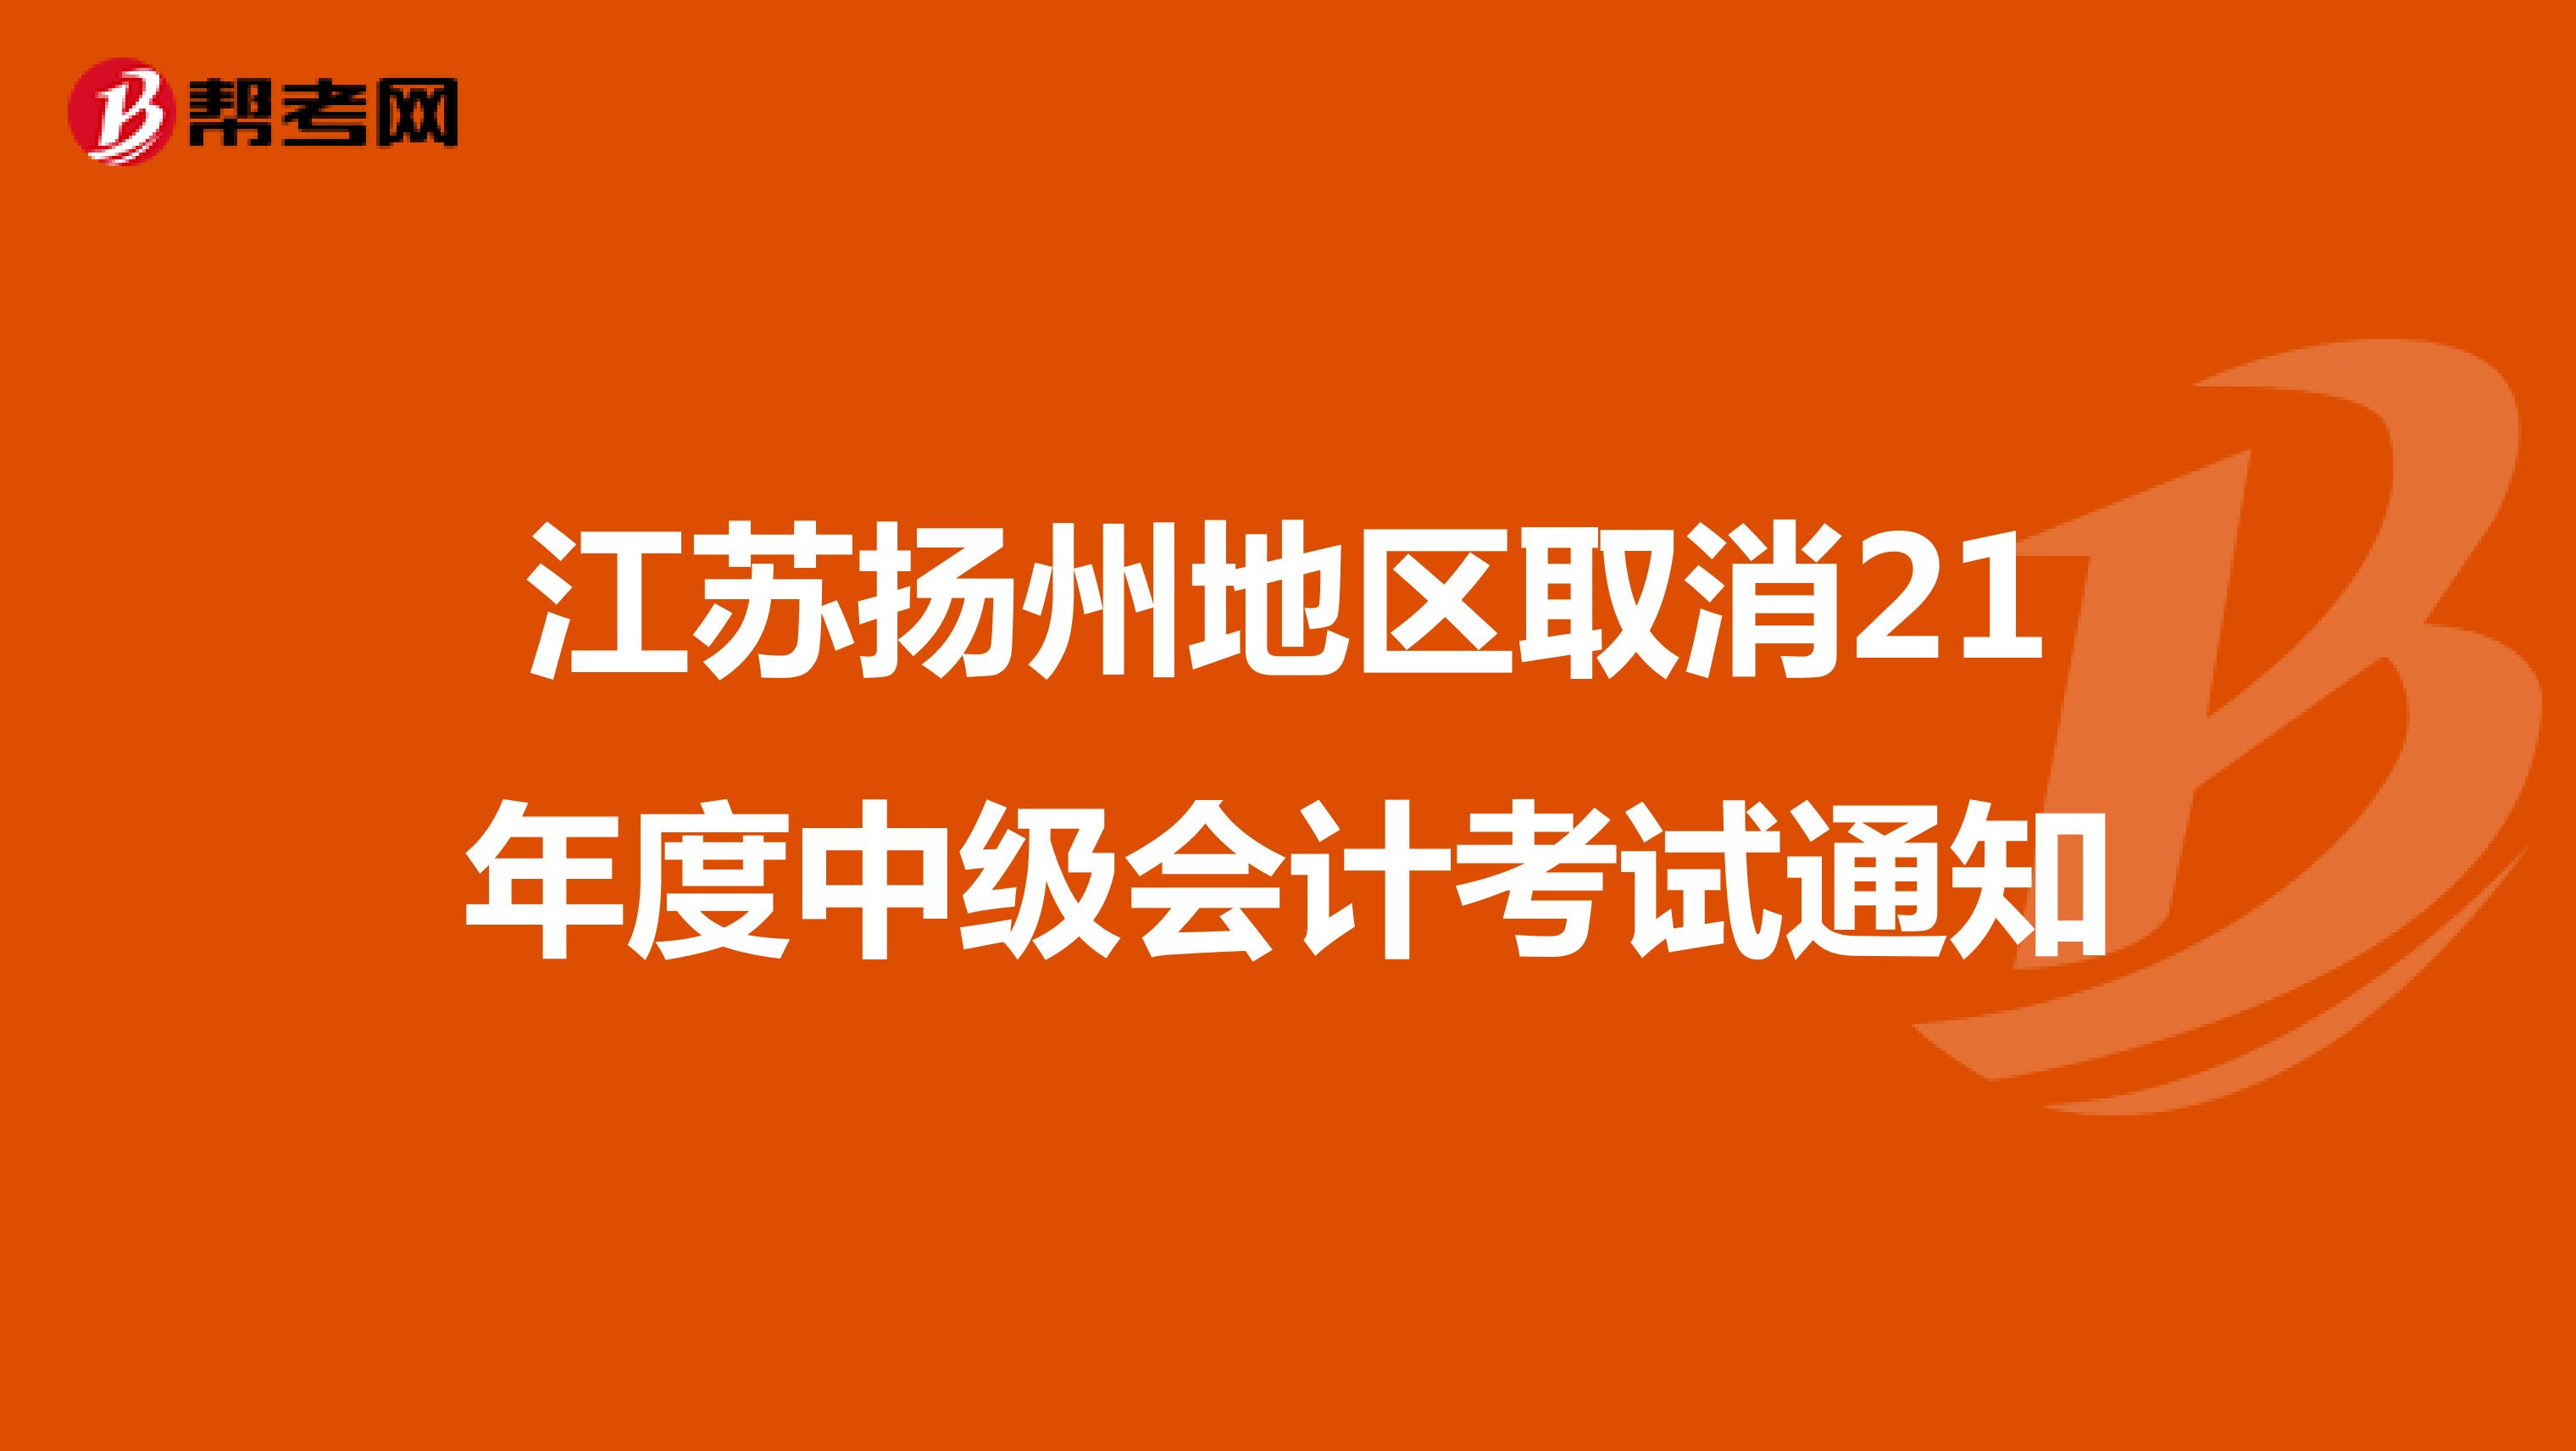 江苏扬州地区取消21年度中级会计考试通知